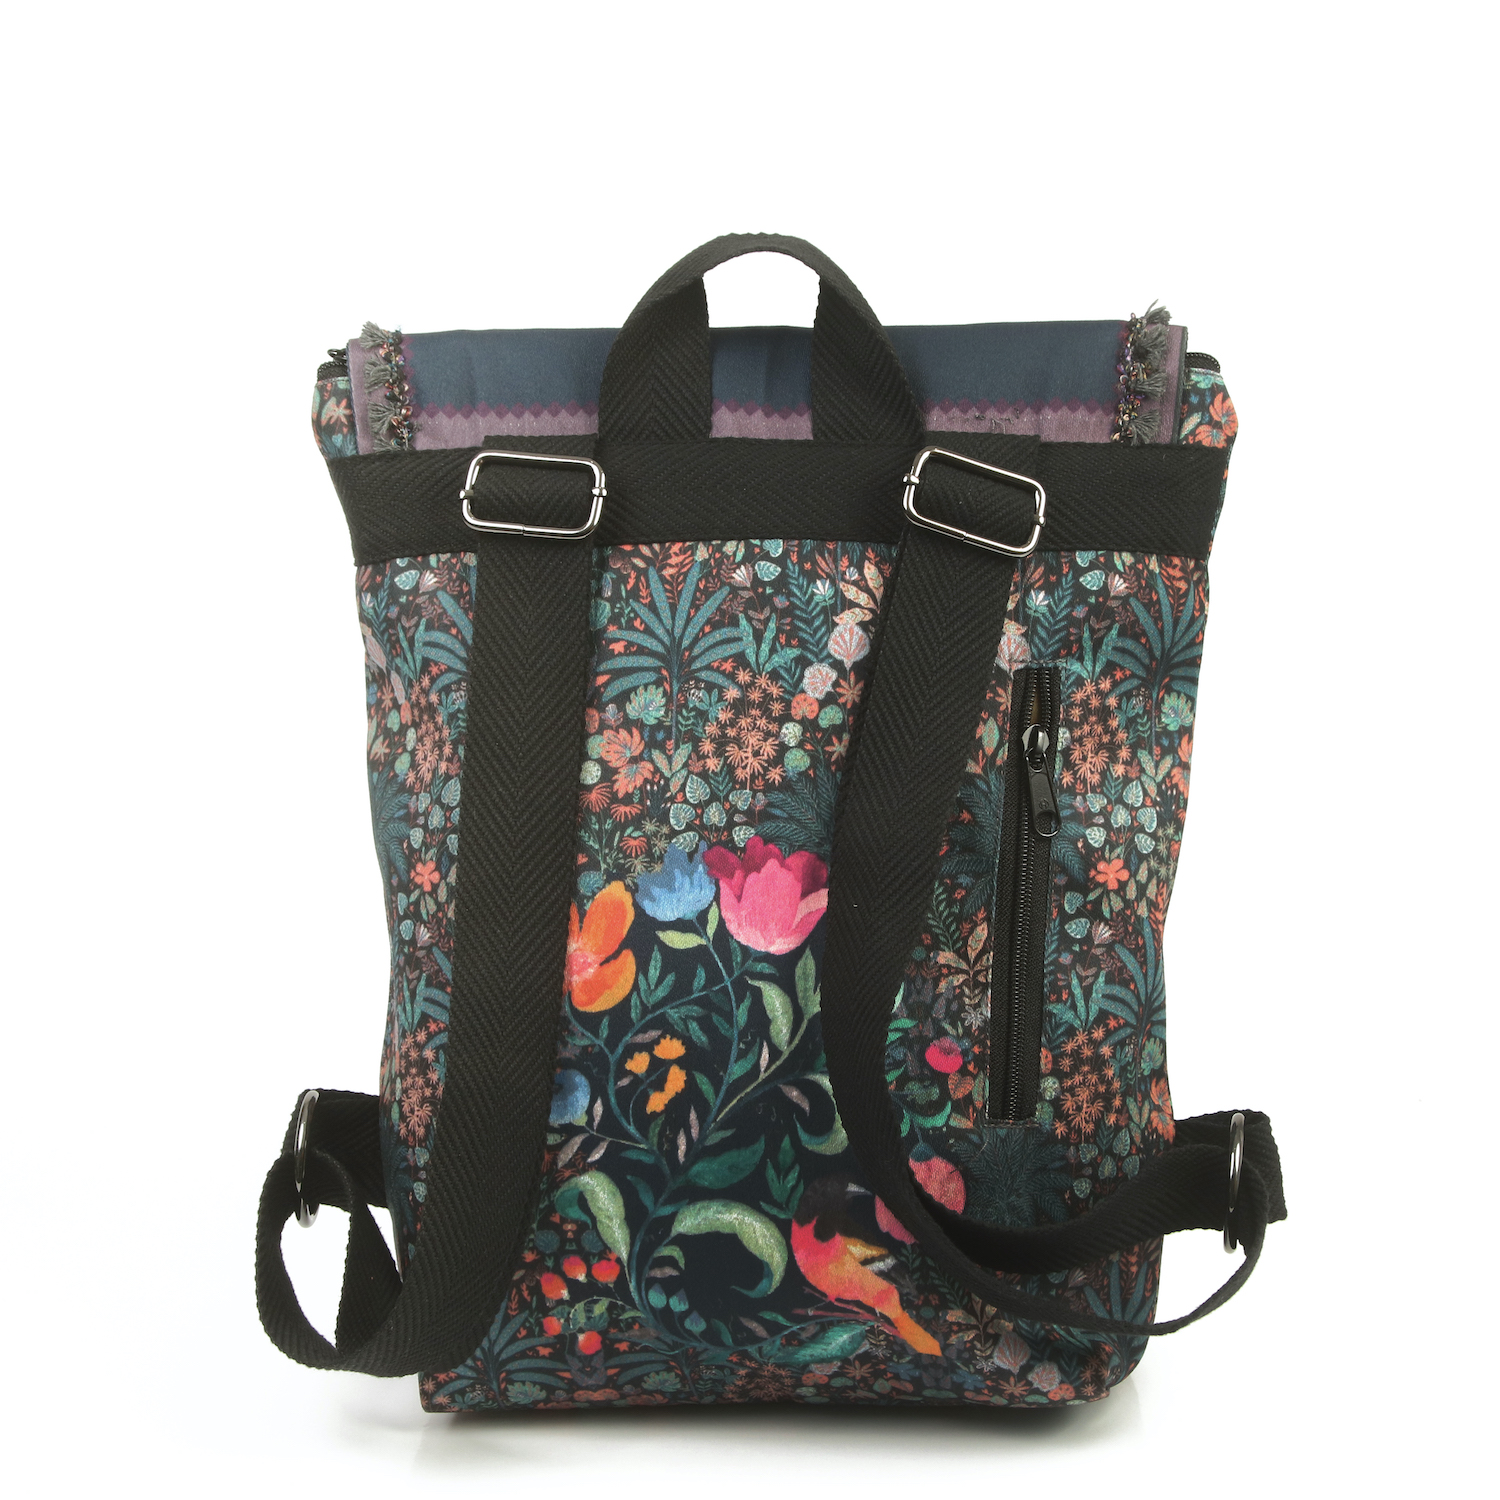 LazyDayz-Designs-Backpack-γυναικείος-σάκος-πλάτης-χειροποίητος bb0702c